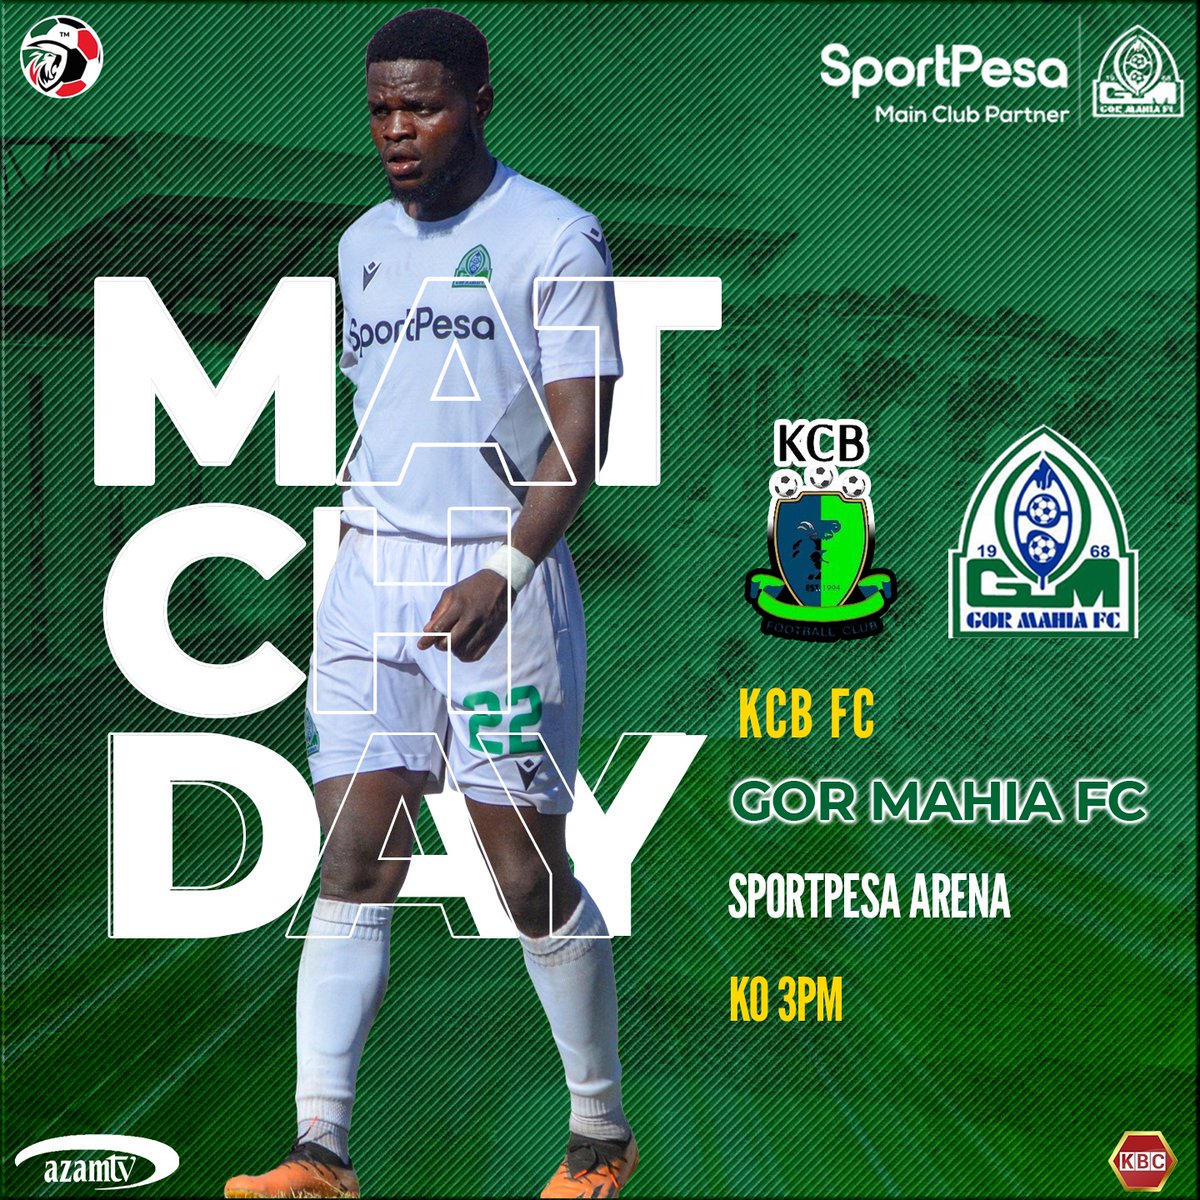 Match Day : KCB FC 🆚 GMFC 
🕟 3.00pm
🏆 Kenya Premier League
🏟 Sportpesa Arena

#SportpesaNaGor #Kogalo #Sirkal